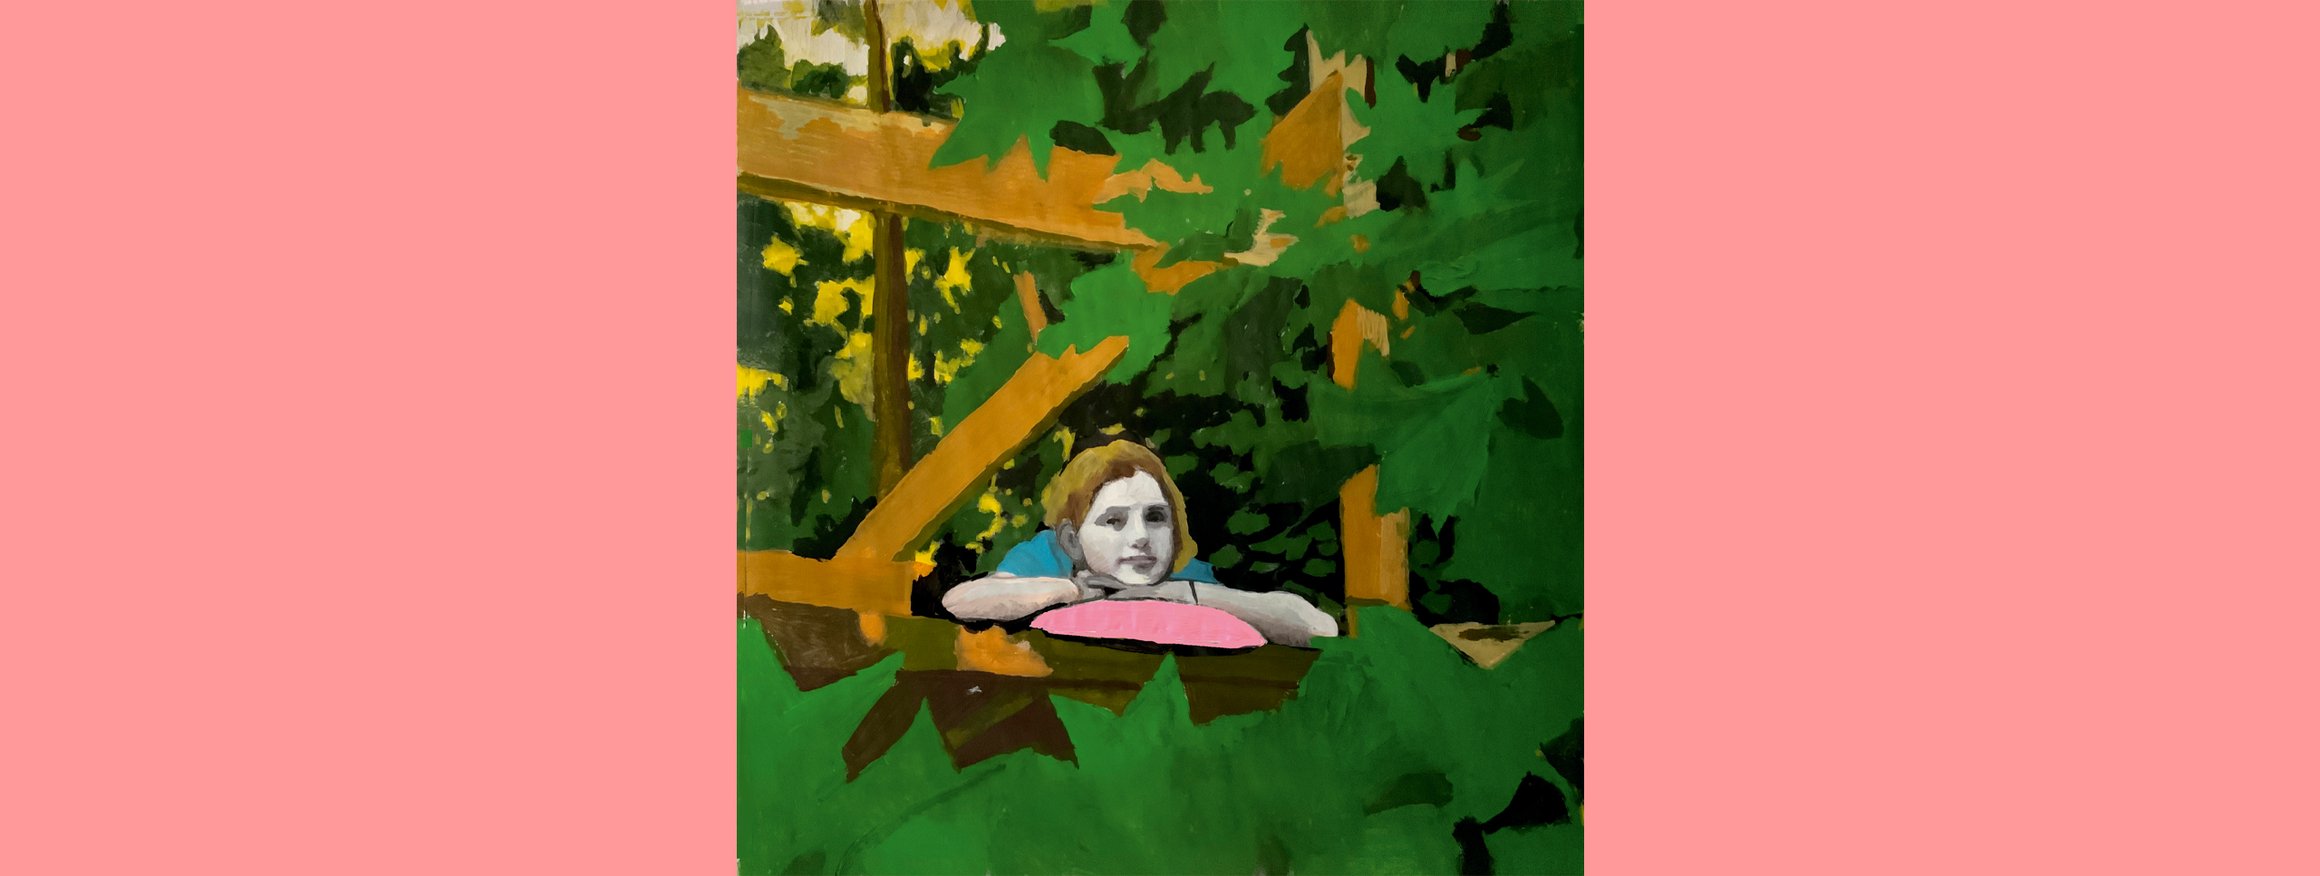 Das Gemälde zeigt ein Mädchen, dass mit einem rosa Kissen seinen Hände und Kopf auf einem Gartenzaun gelegt hat und verträumt in den grünen Blätterwald schaut